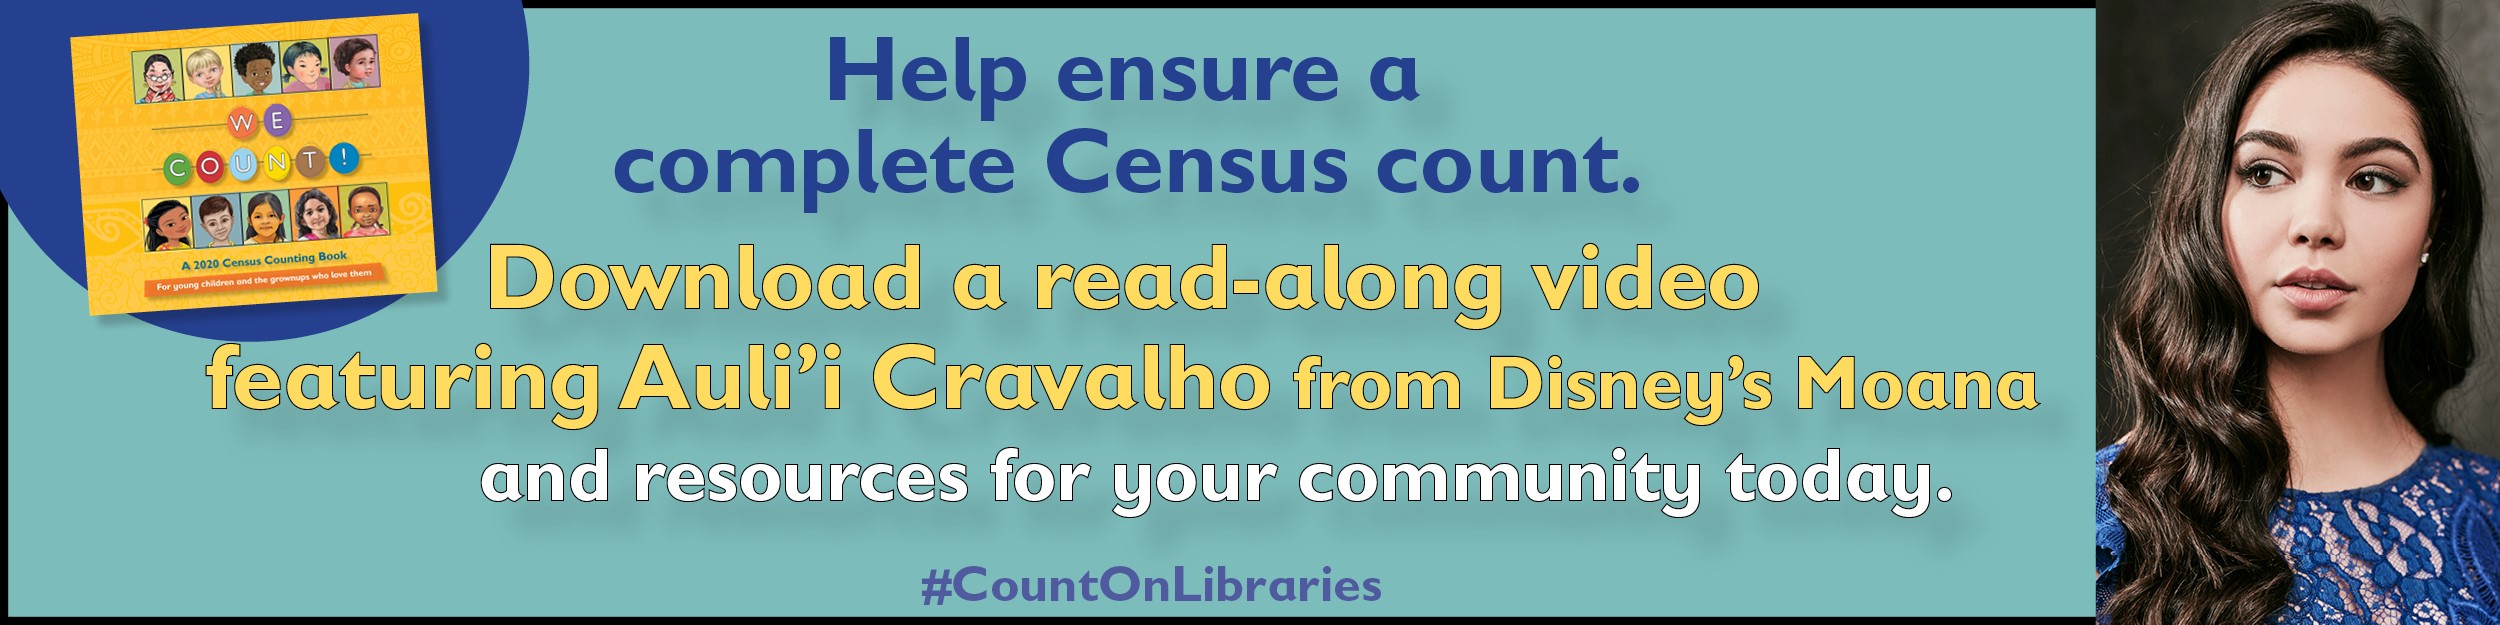 Census Read-along featuring Auli'i Cravalho